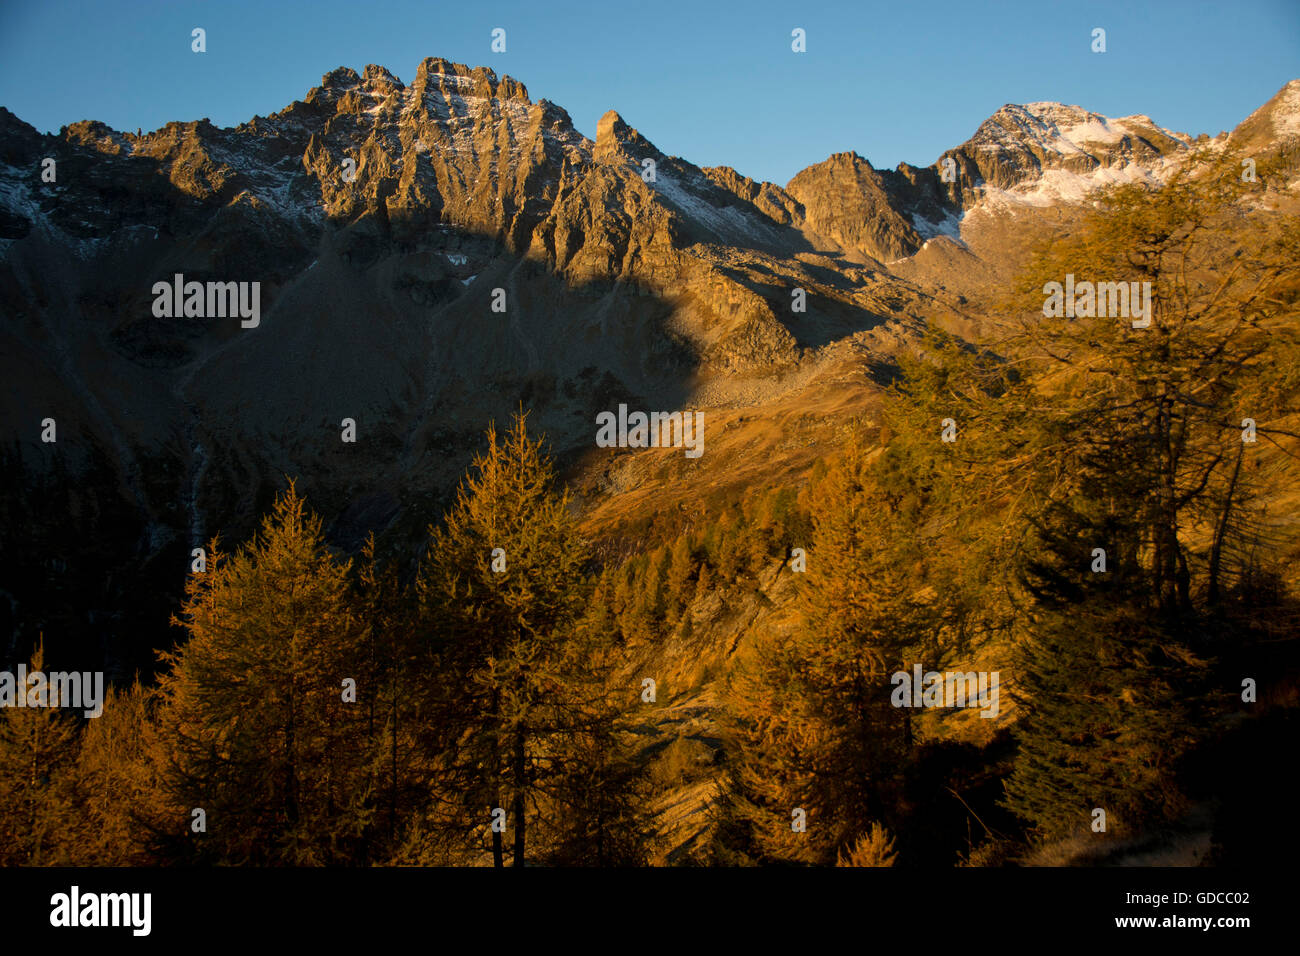 Switzerland,Europe,Ticino,Leventina,Chironico,Val Chironico,mountain brook,Ticinetto,waterfall Stock Photo